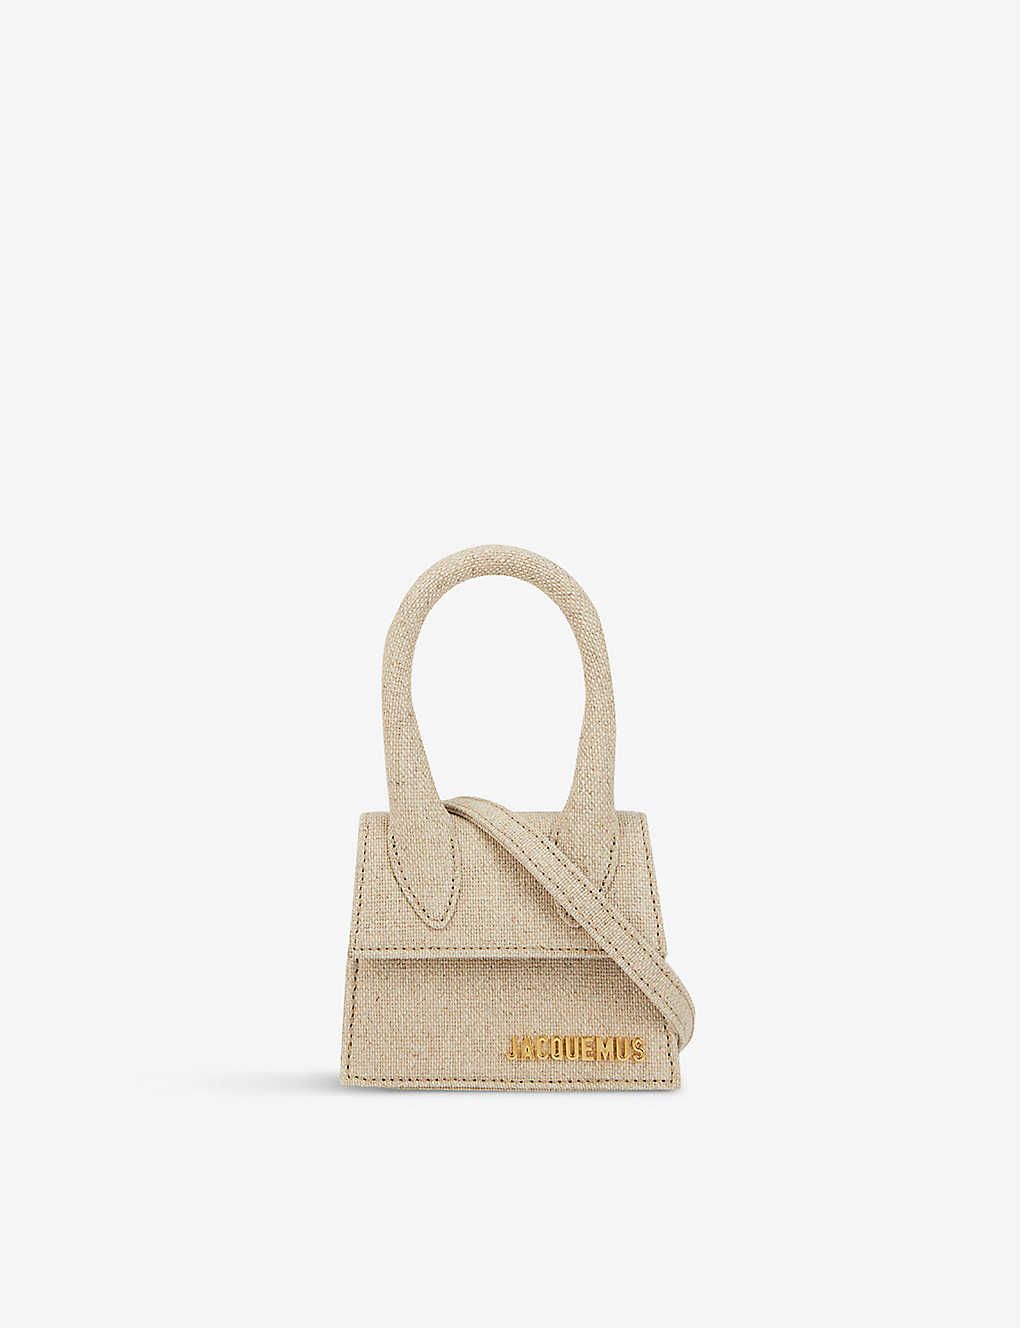 JACQUEMUS Le Chiquito linen top-handle bag | Selfridges